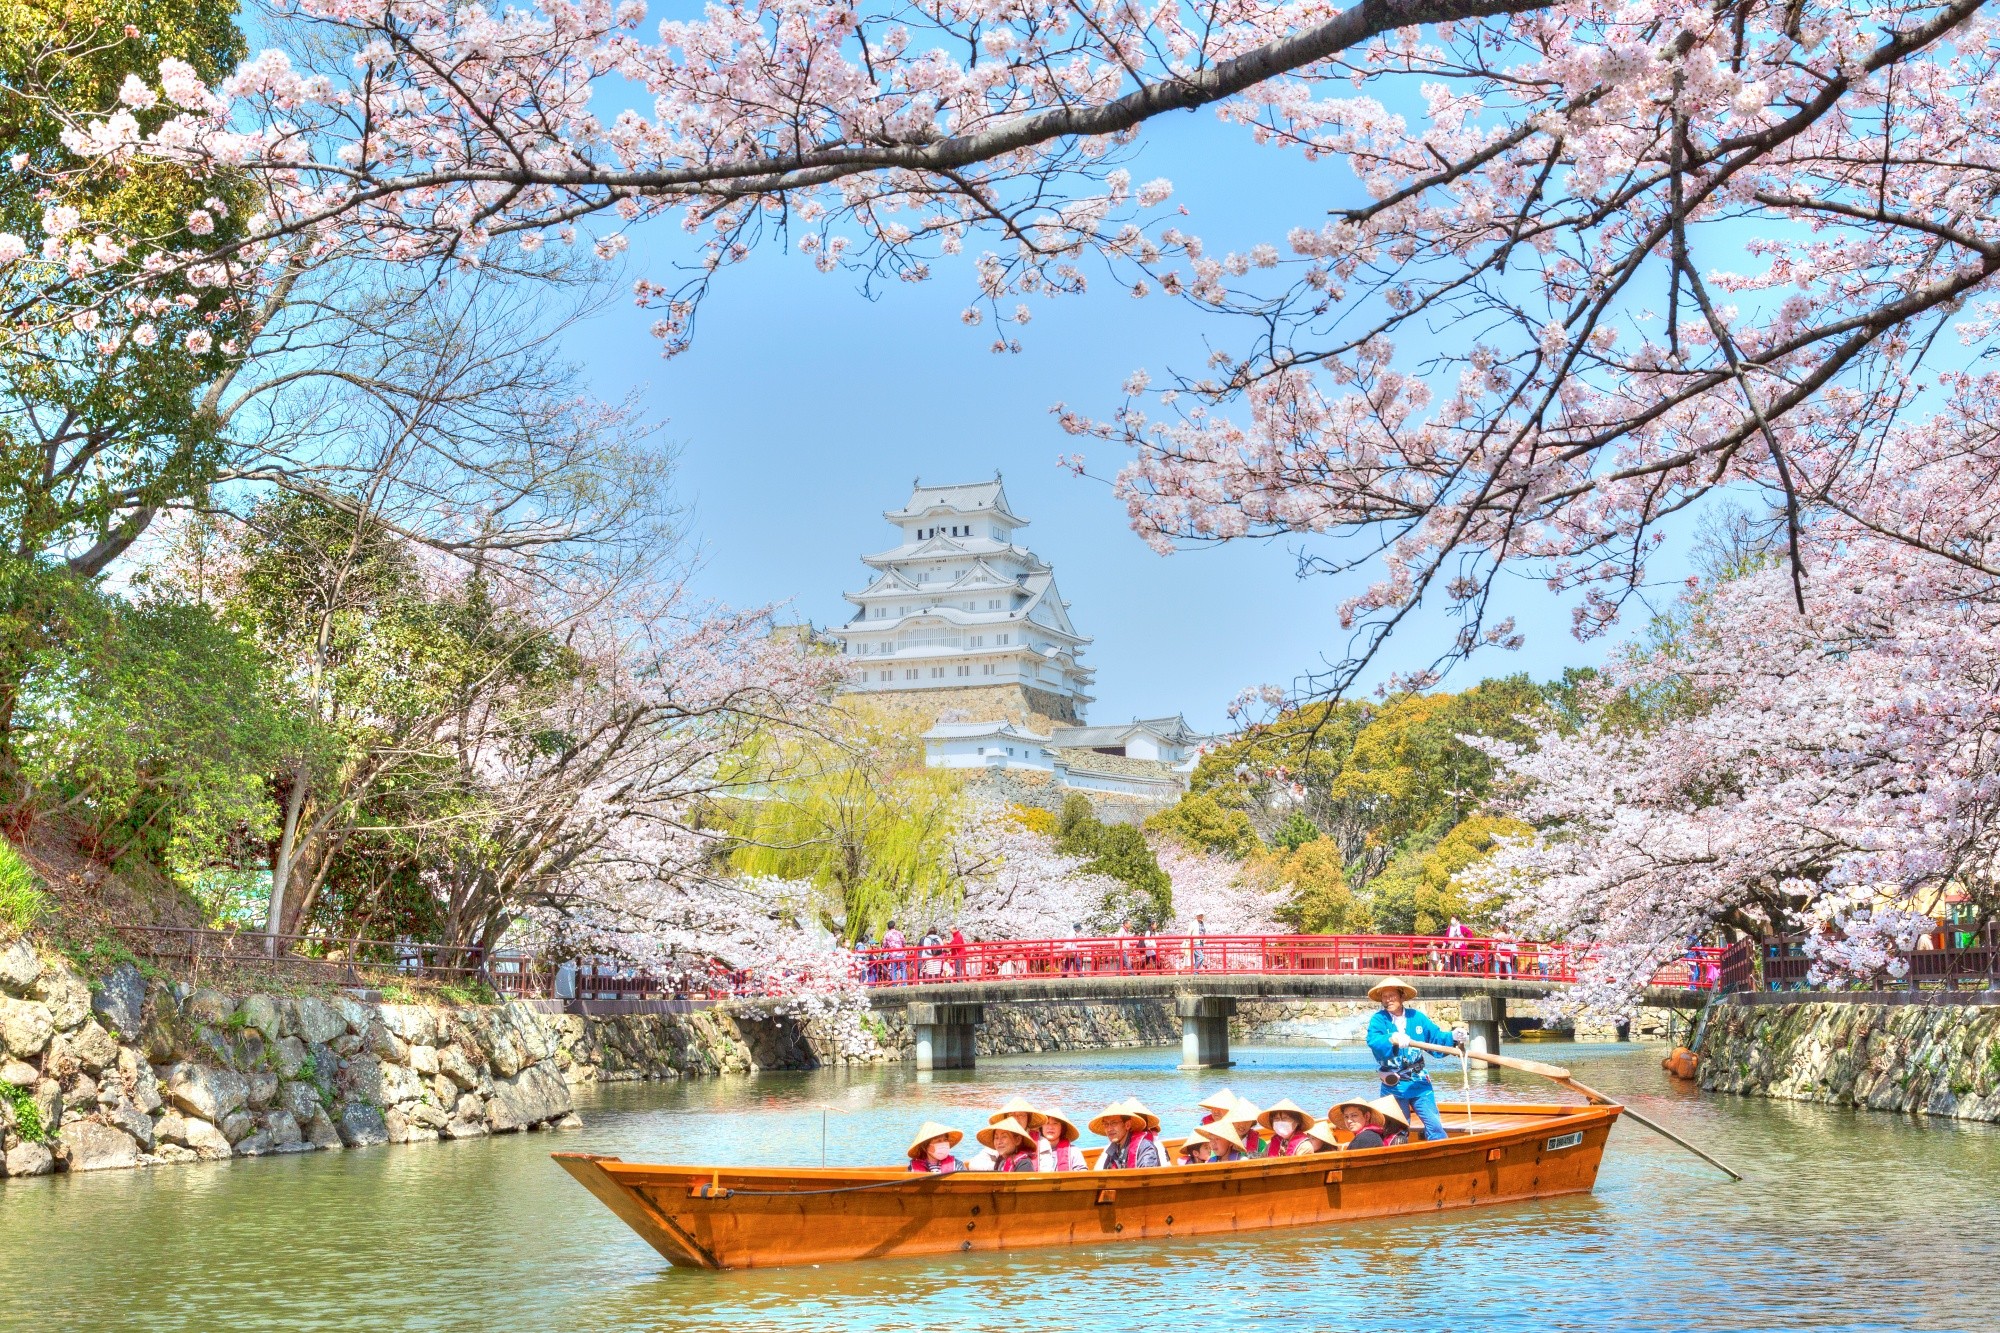 【ซากุระ x ปราสาท】ปราสาทฮิเมจิ ทิวทัศน์ญี่ปุ่นกับกำแพงปราสาทสีขาวและสีของซากุระ (จังหวัดเฮียวโกะ)